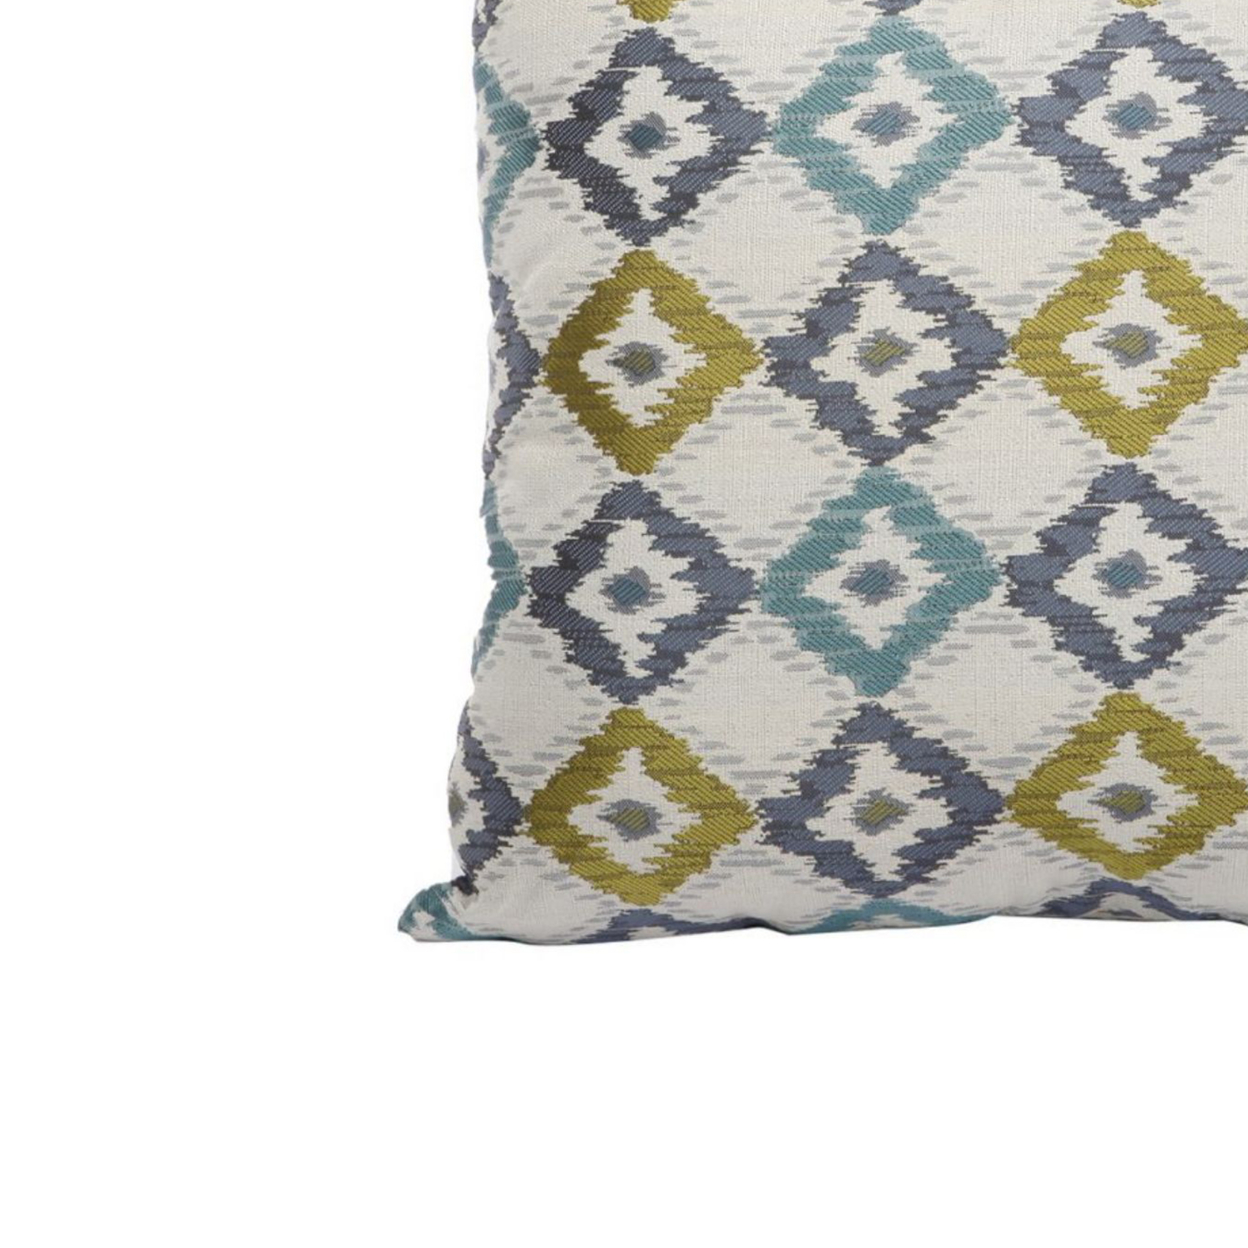 Woven Design Fabric Accent Pillow In Diamond Pattern, Multicolor- Saltoro Sherpi